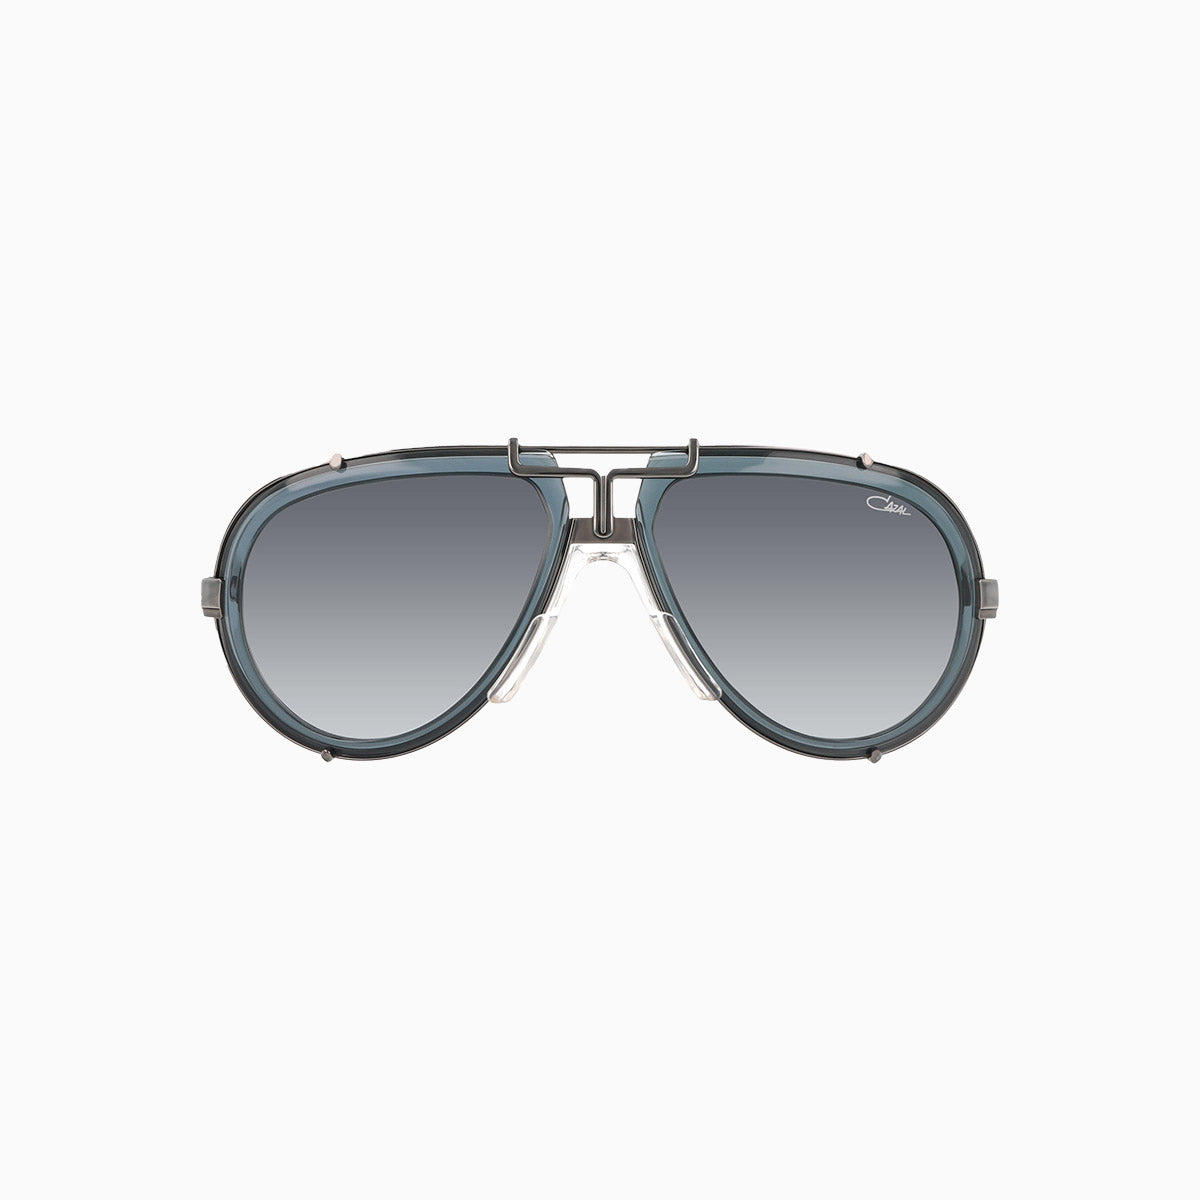 cazal-eyewear-mod-642-cazal-grey-gunmetal-sunglasses-642-006